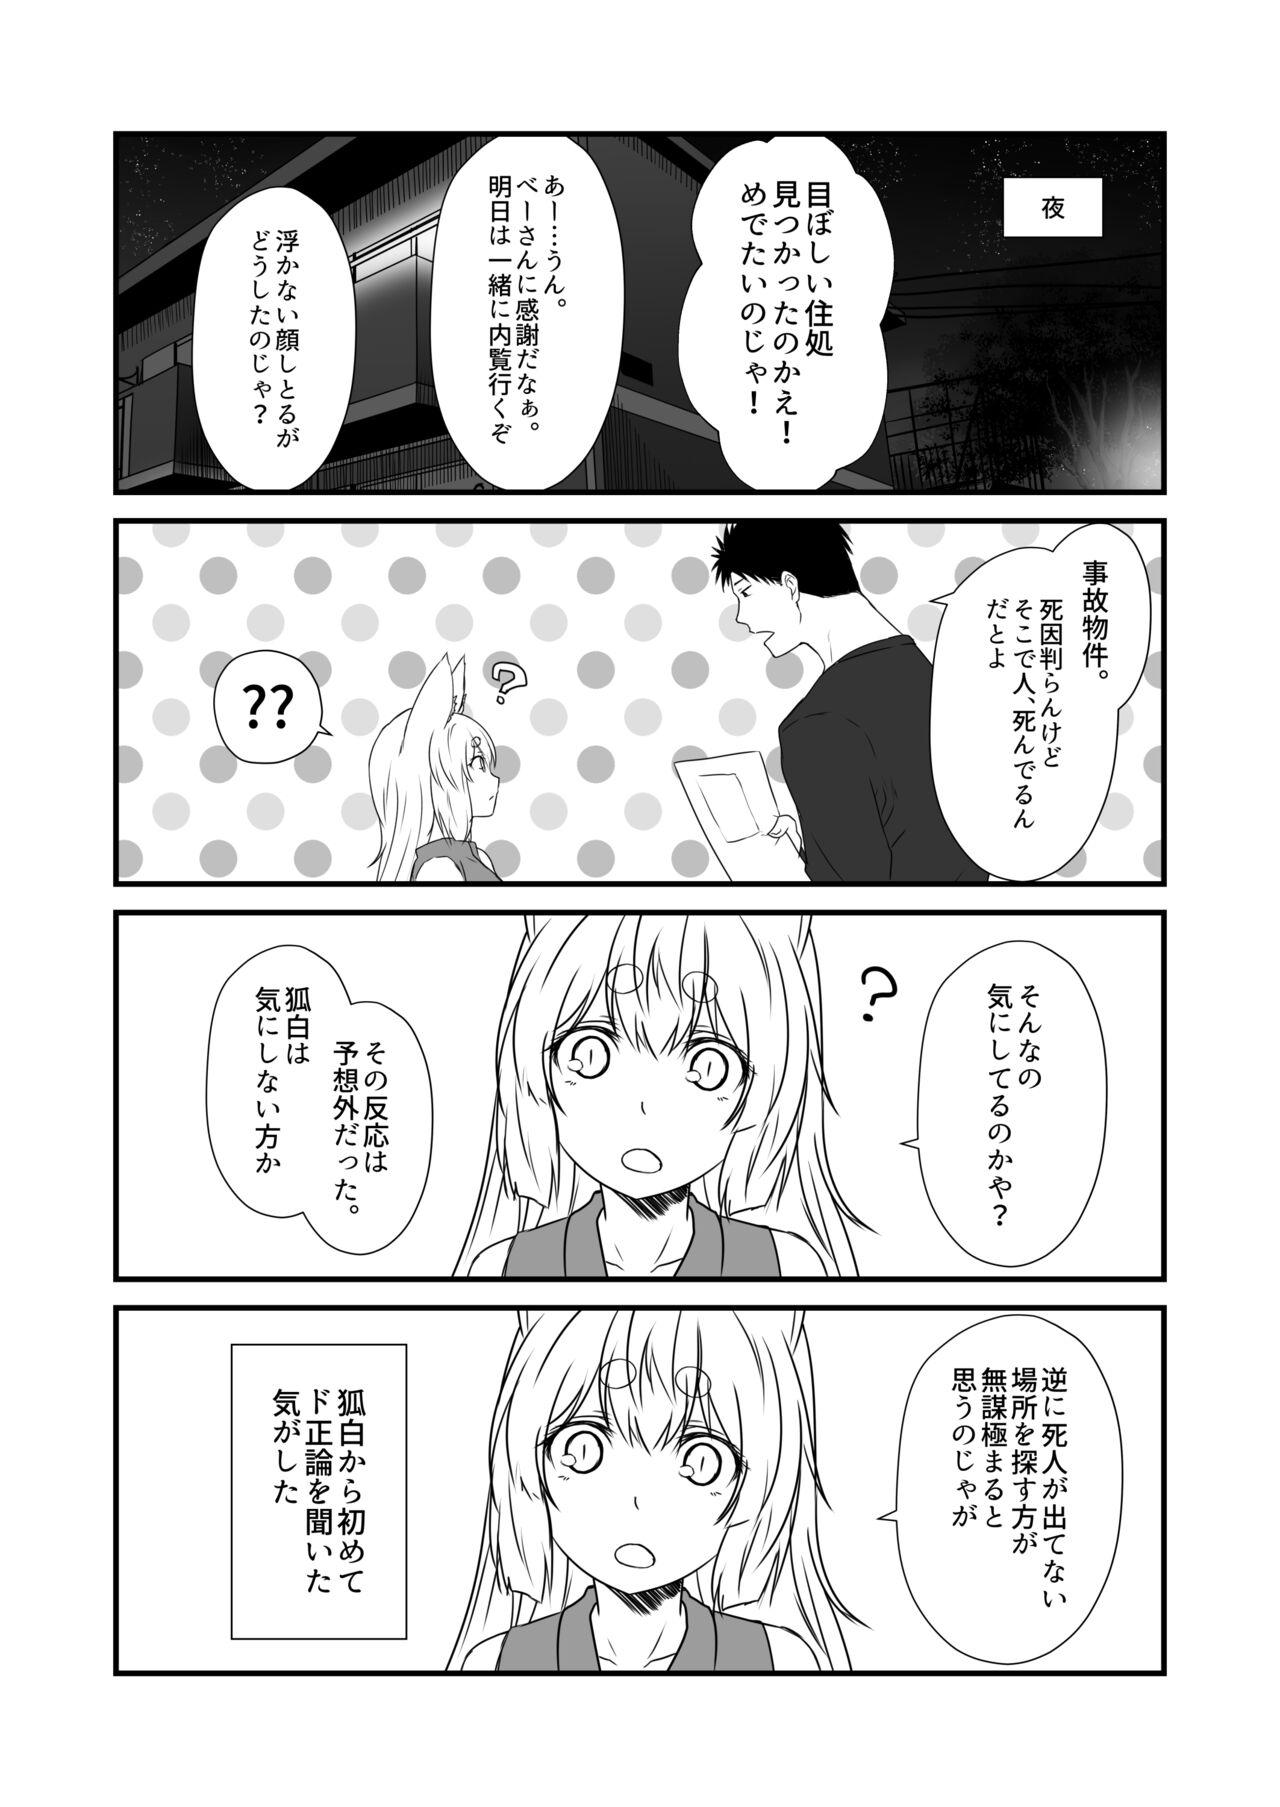 No Condom Kohaku Biyori Vol. 8 - Original Sharing - Page 10